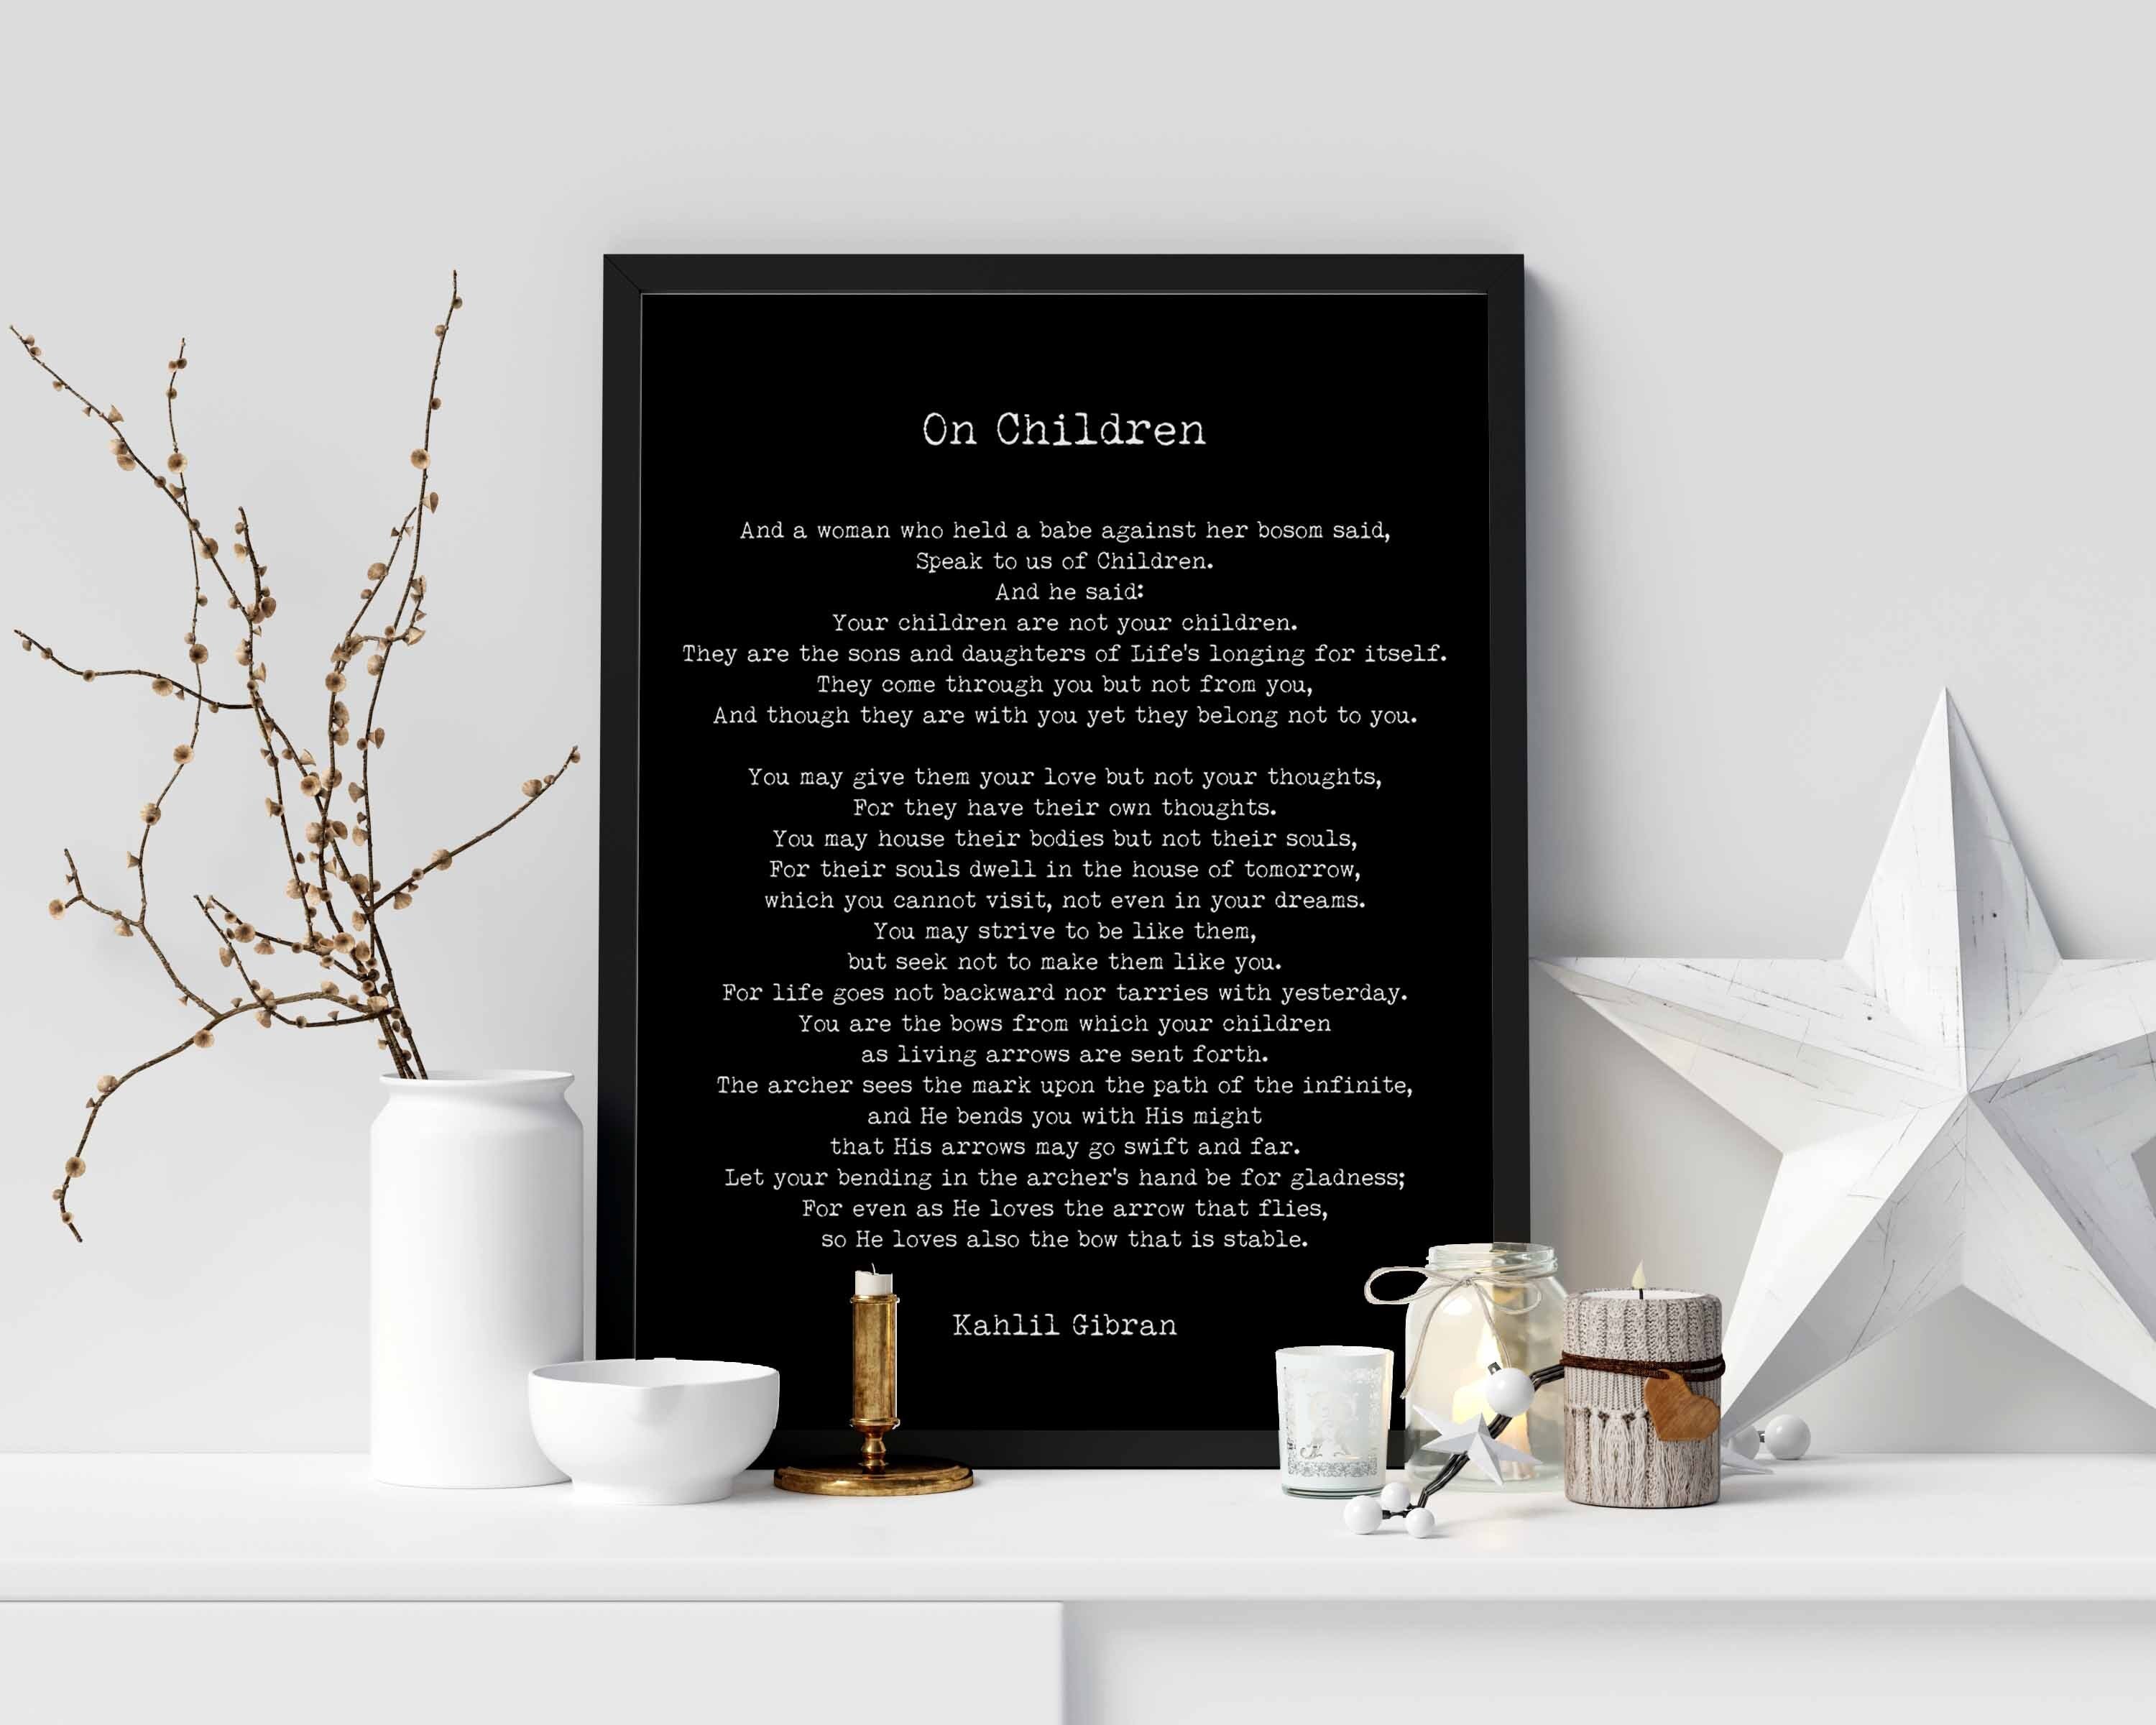 On Children Poem Kahlil Gibran Wall Art Prints unframed in Black & White or Cream and Black